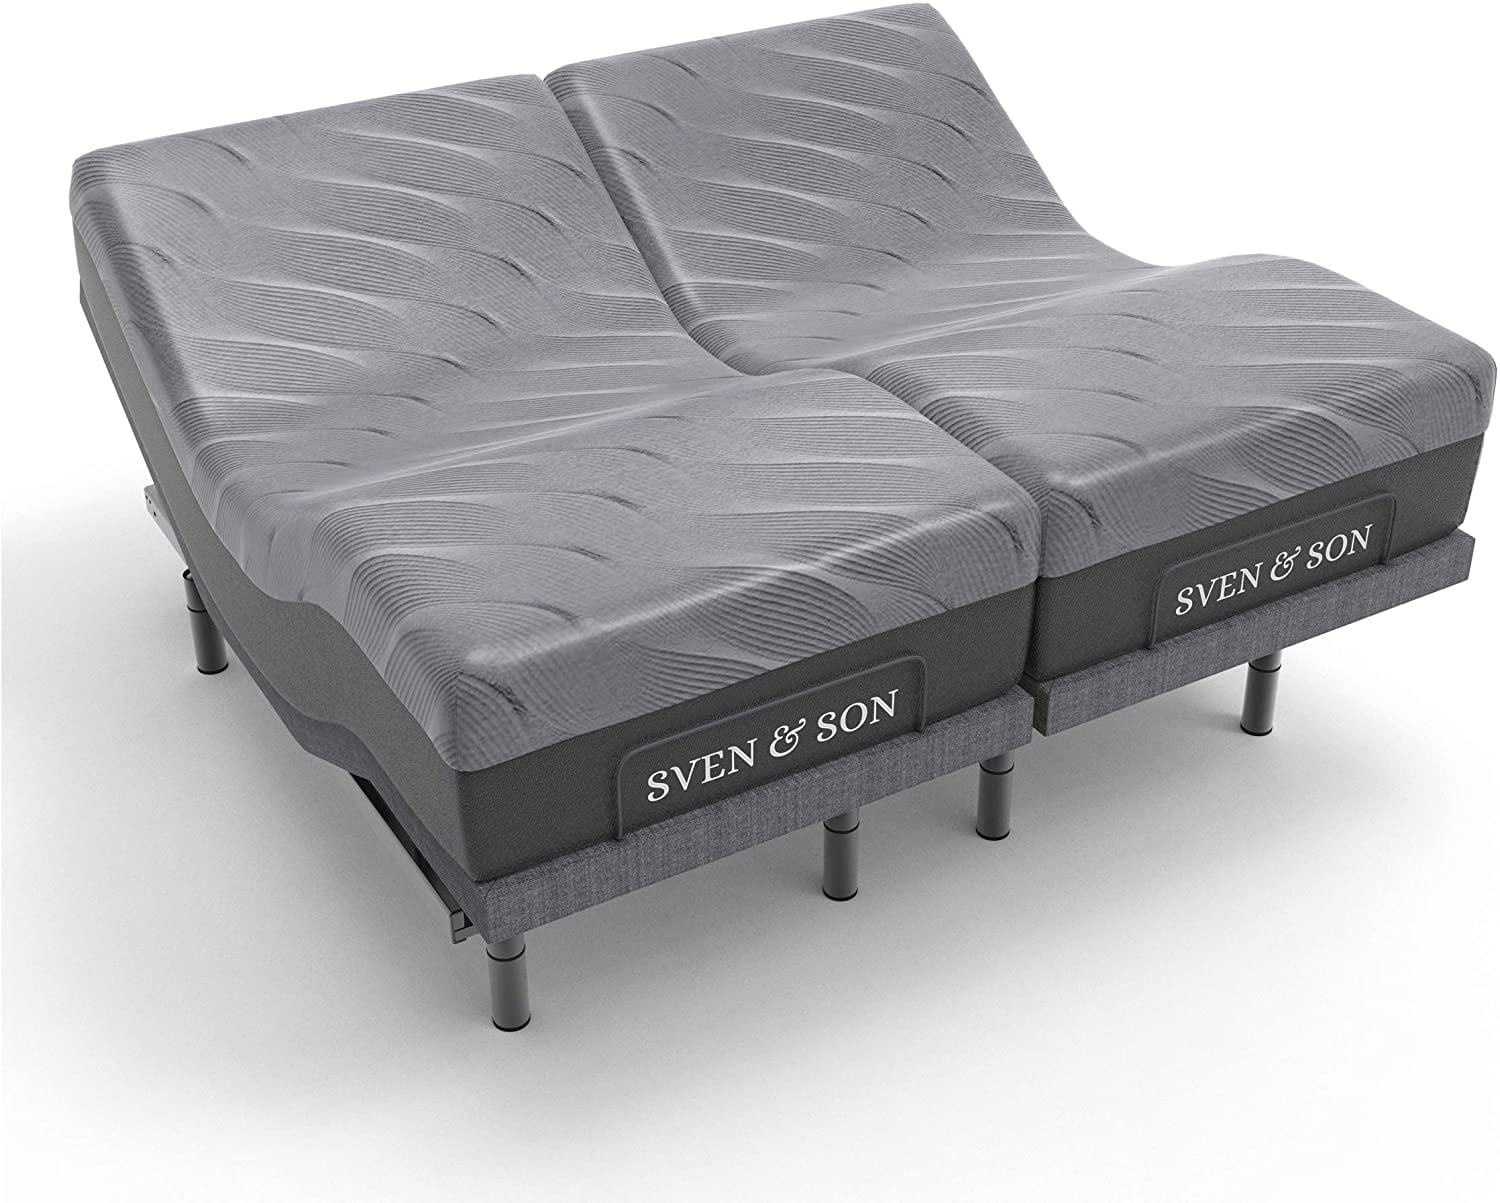 Sven Son Split King Adjustable Bed, Adjustable Bed Base King